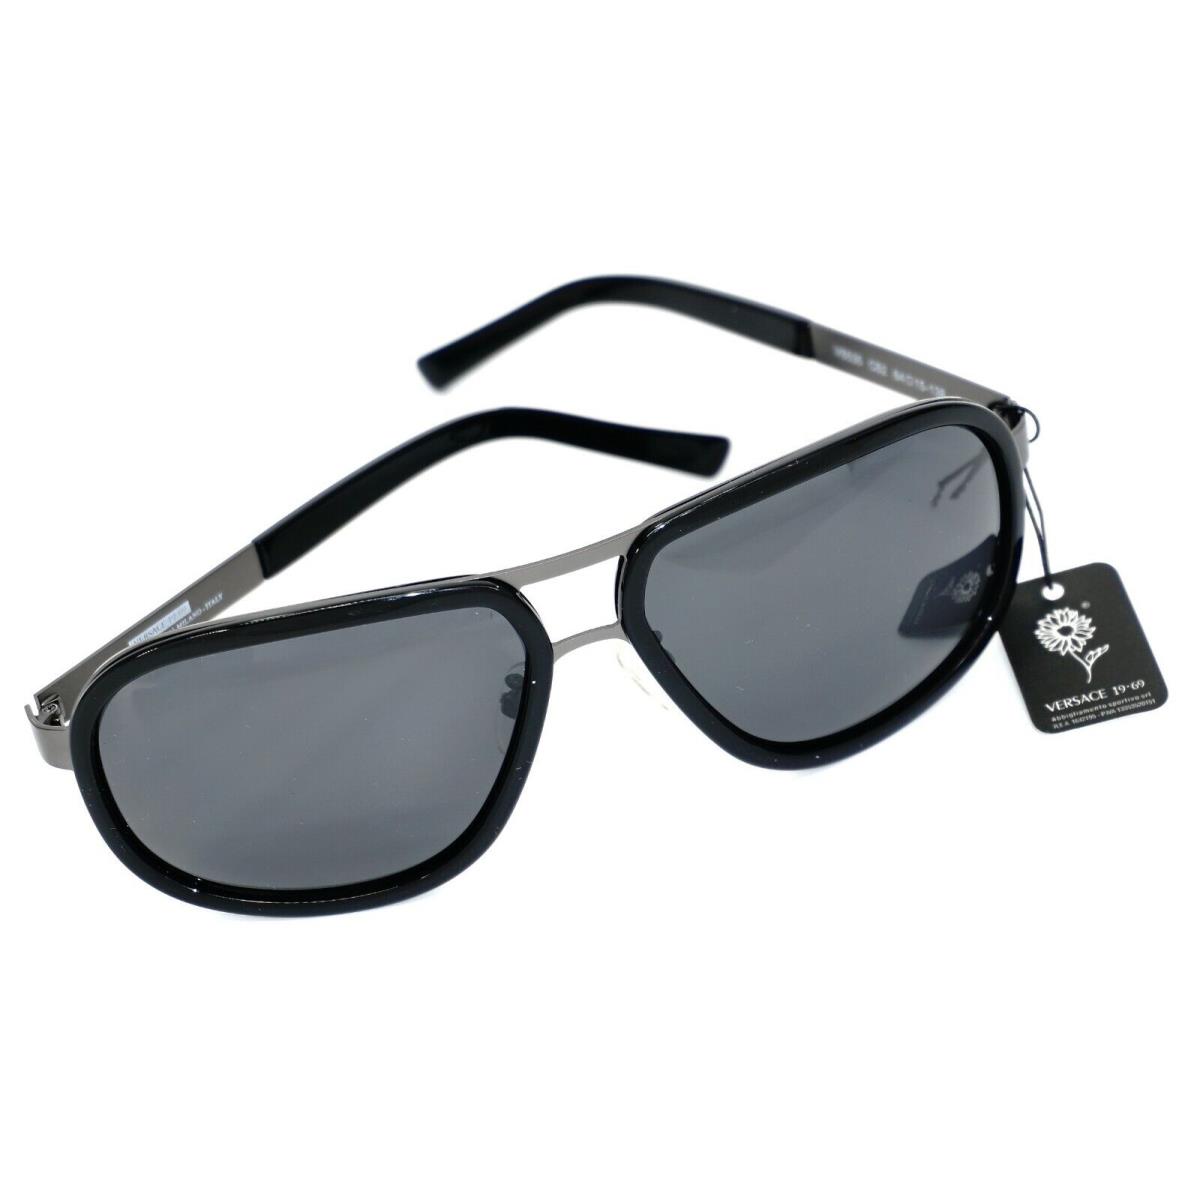 Versace 19 69 Abbigliamento Sportivo Srl Sun Glasses New/no Box